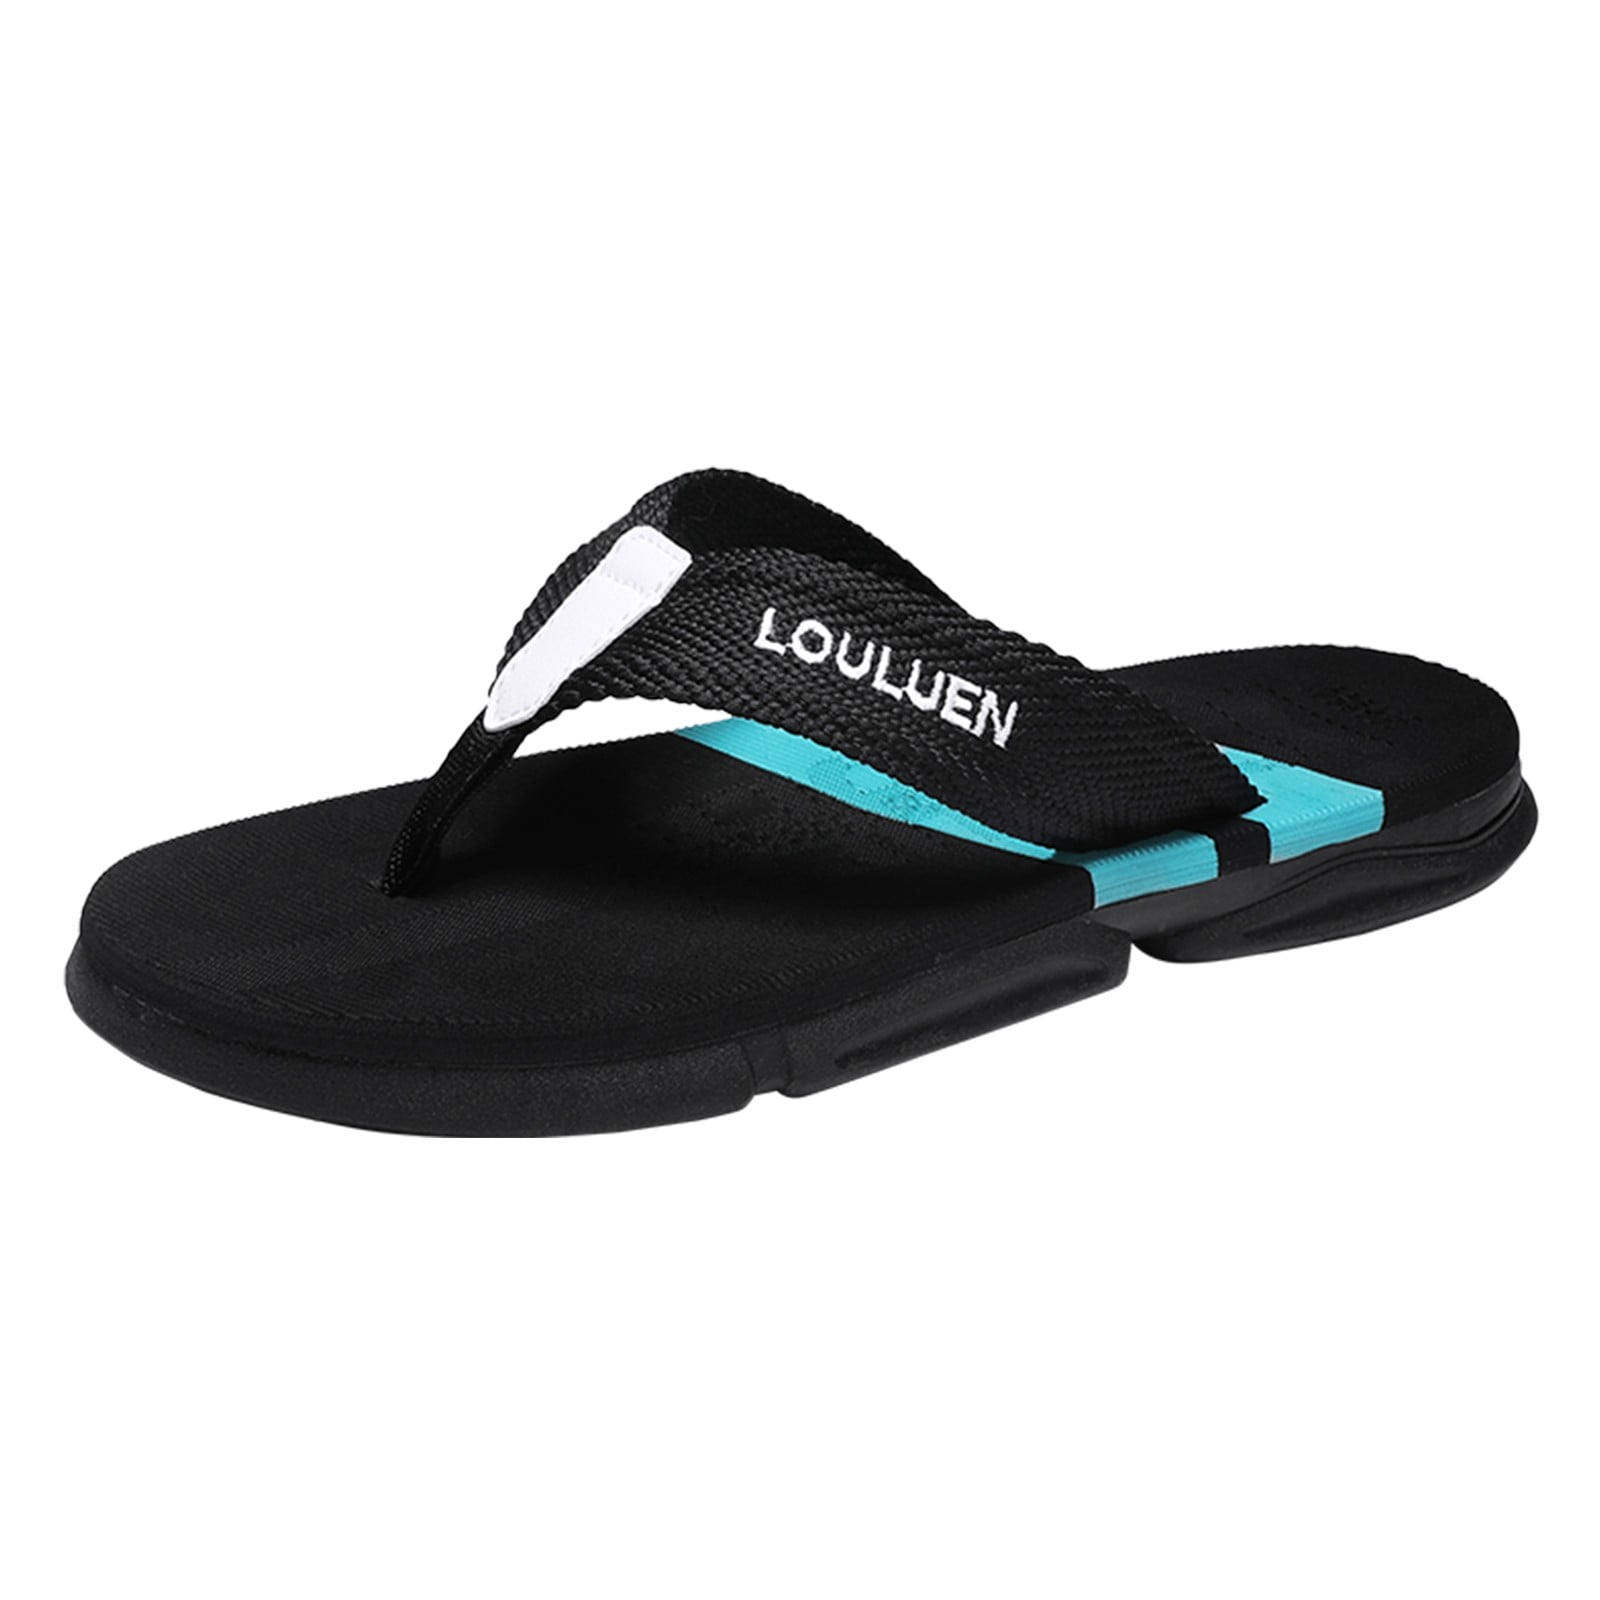 Louis Vuitton Flip Flops Sandals Navy Size US8 EU41 Men's